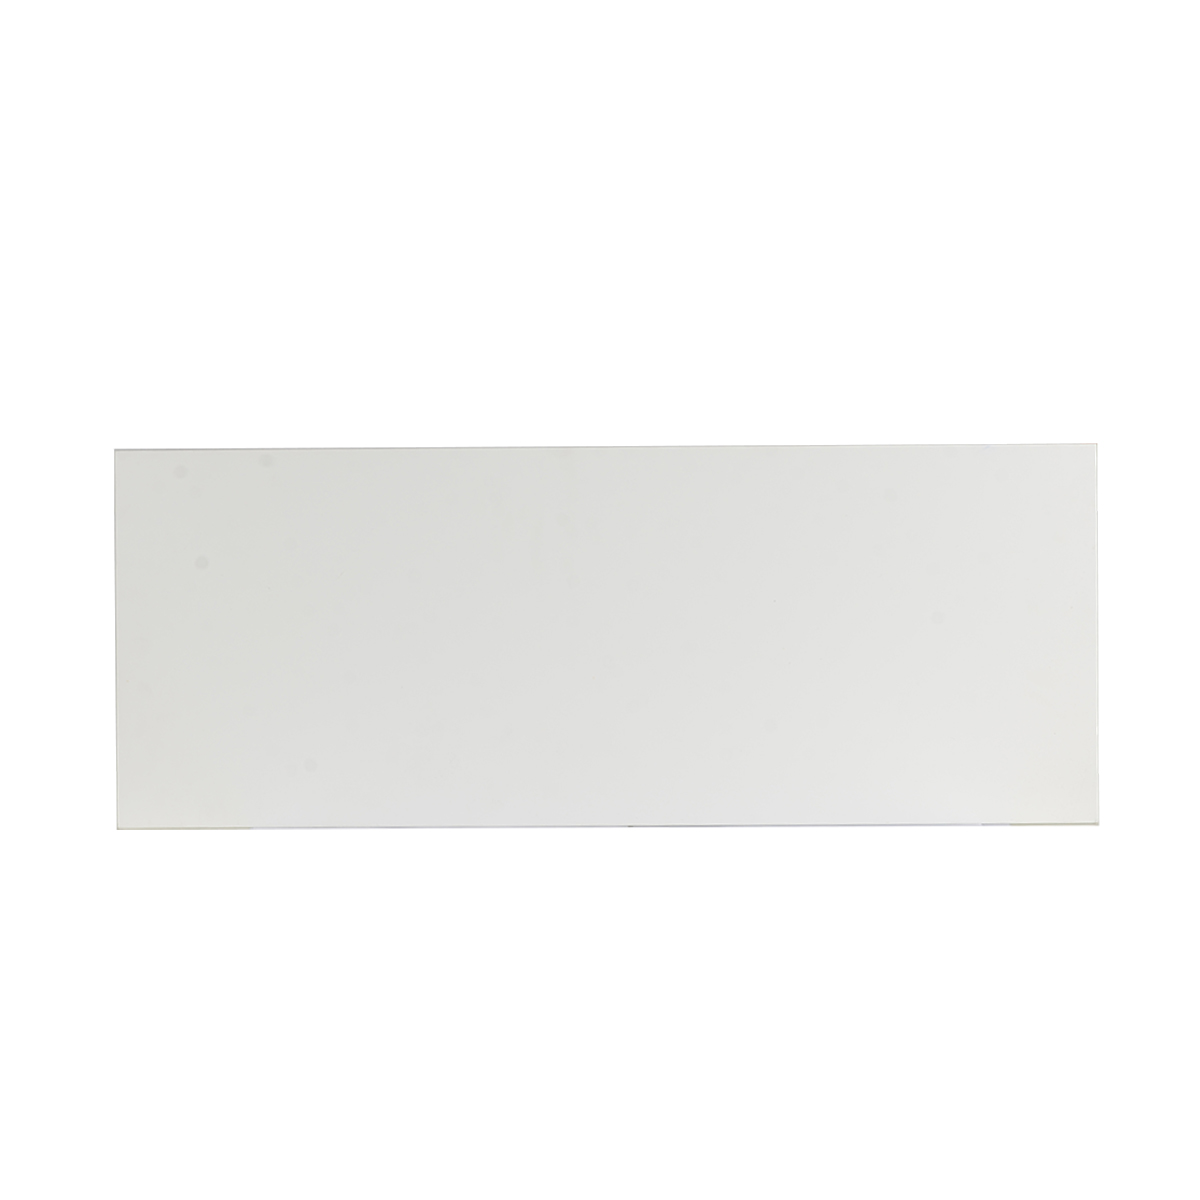 Kệ gỗ treo tường kiểu thanh ngang hình chữ nhật SMARTFLEX màu trắng, kích thước 77x30cm | Index Living Mall - Phân phối độc quyền tại Việt Nam